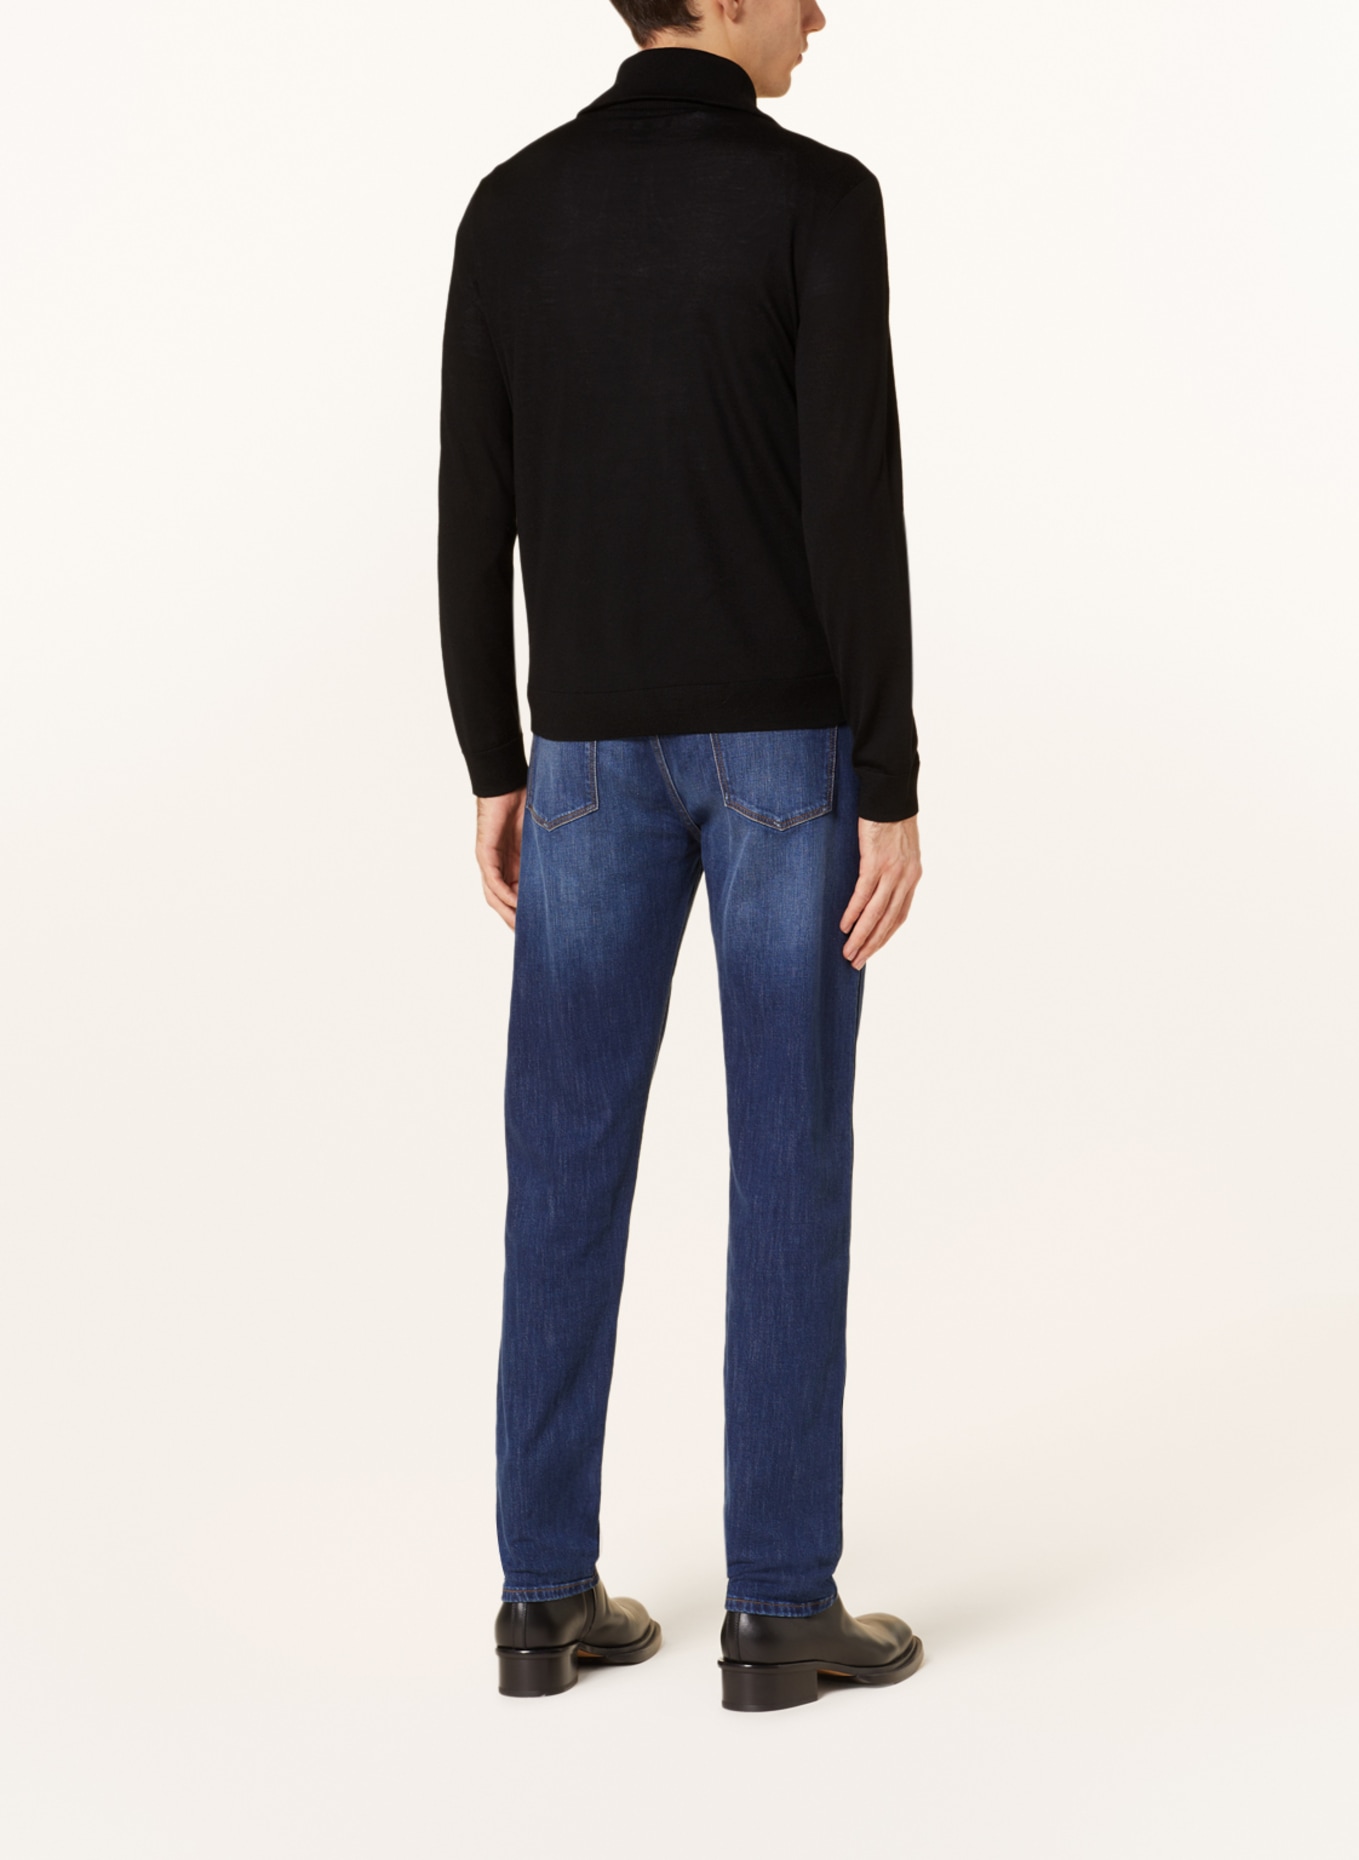 EMPORIO ARMANI Half-zip sweater, Color: BLACK (Image 3)